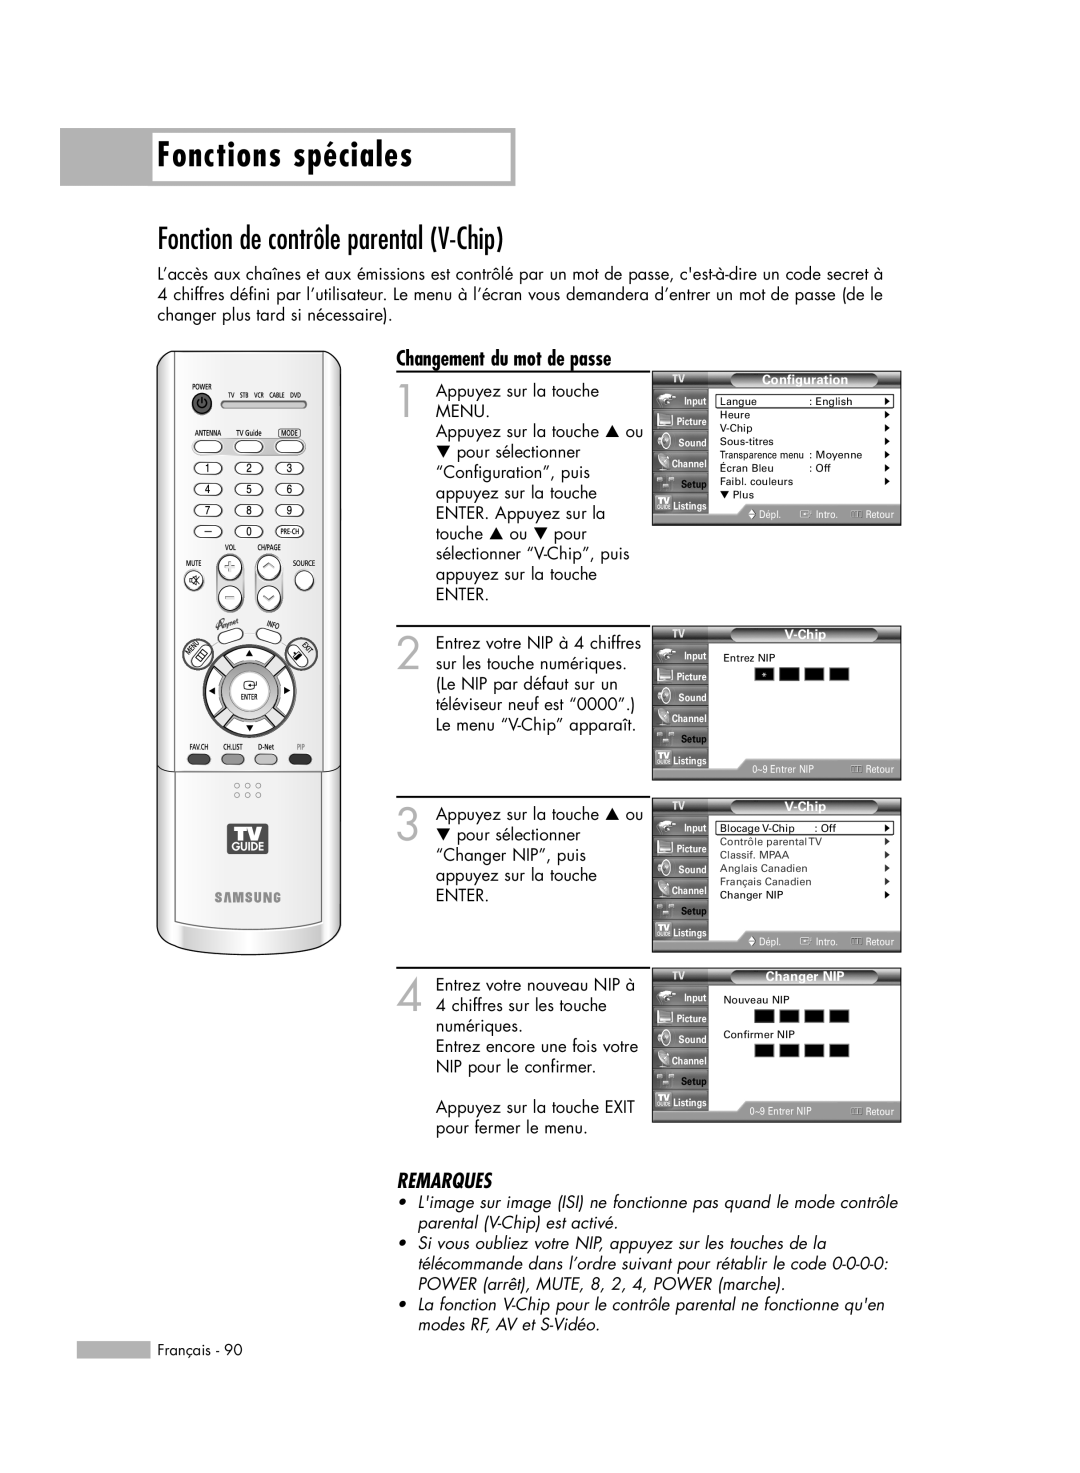 Samsung HL-R5678W manual Fonction de contrôle parental V-Chip, Fonctions spéciales, Remarques, Changement du mot de passe 